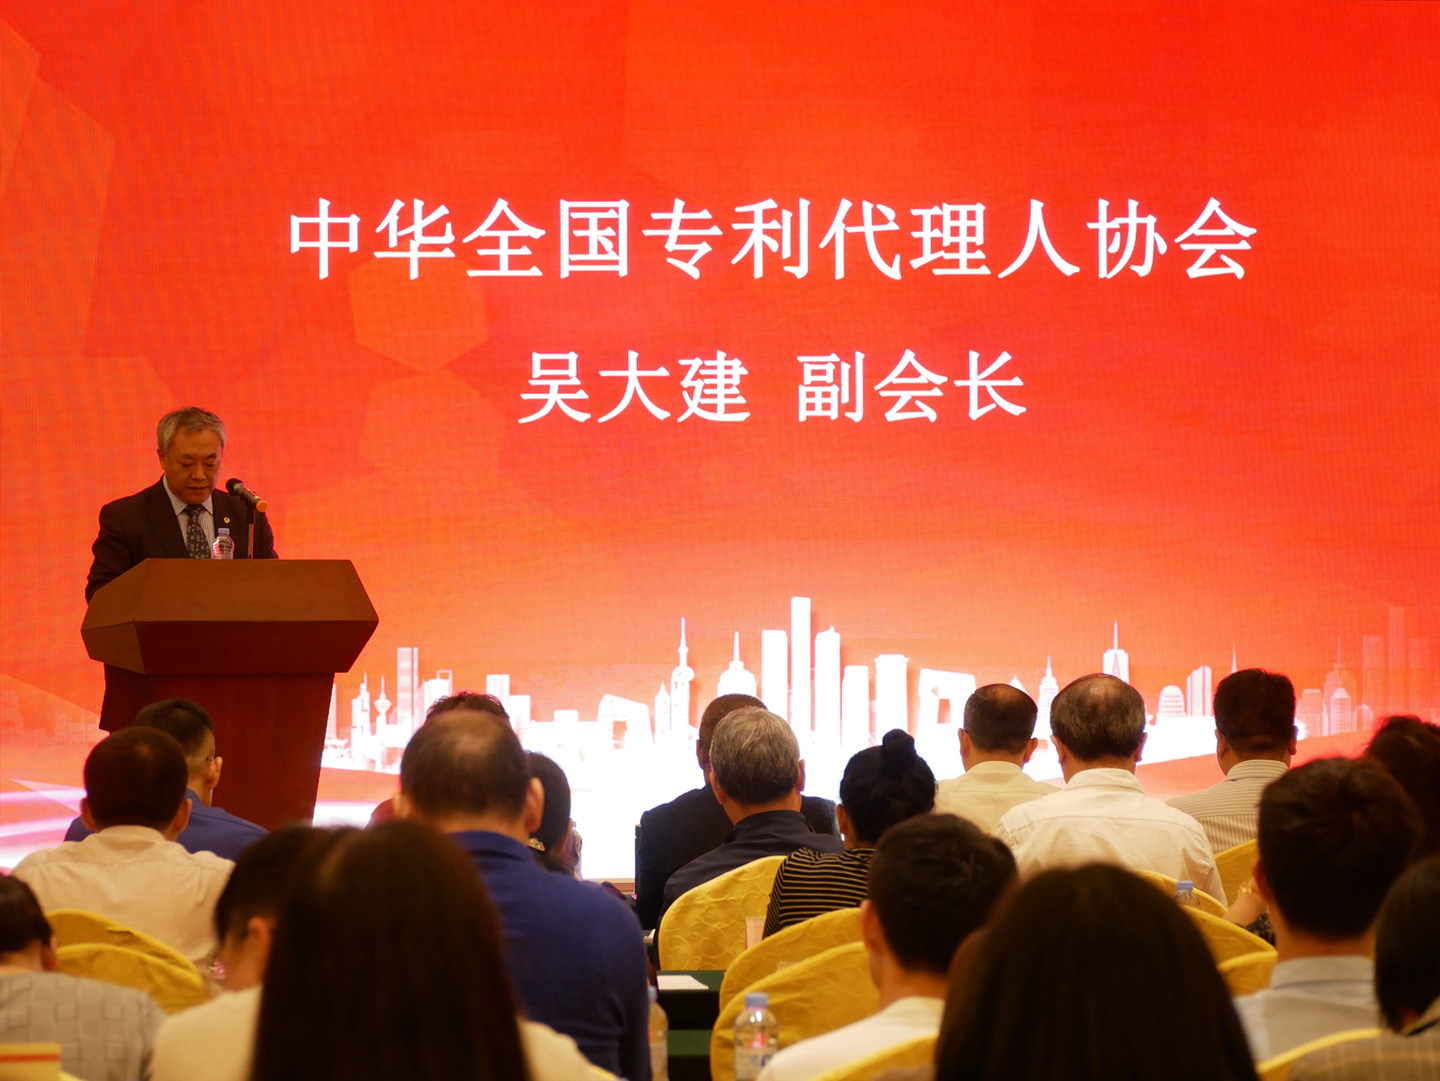 呉大建先生は広東省専利代理協会設立10周年の慶祝会即第三回創新知識産権サービスフォーラムを出席しました